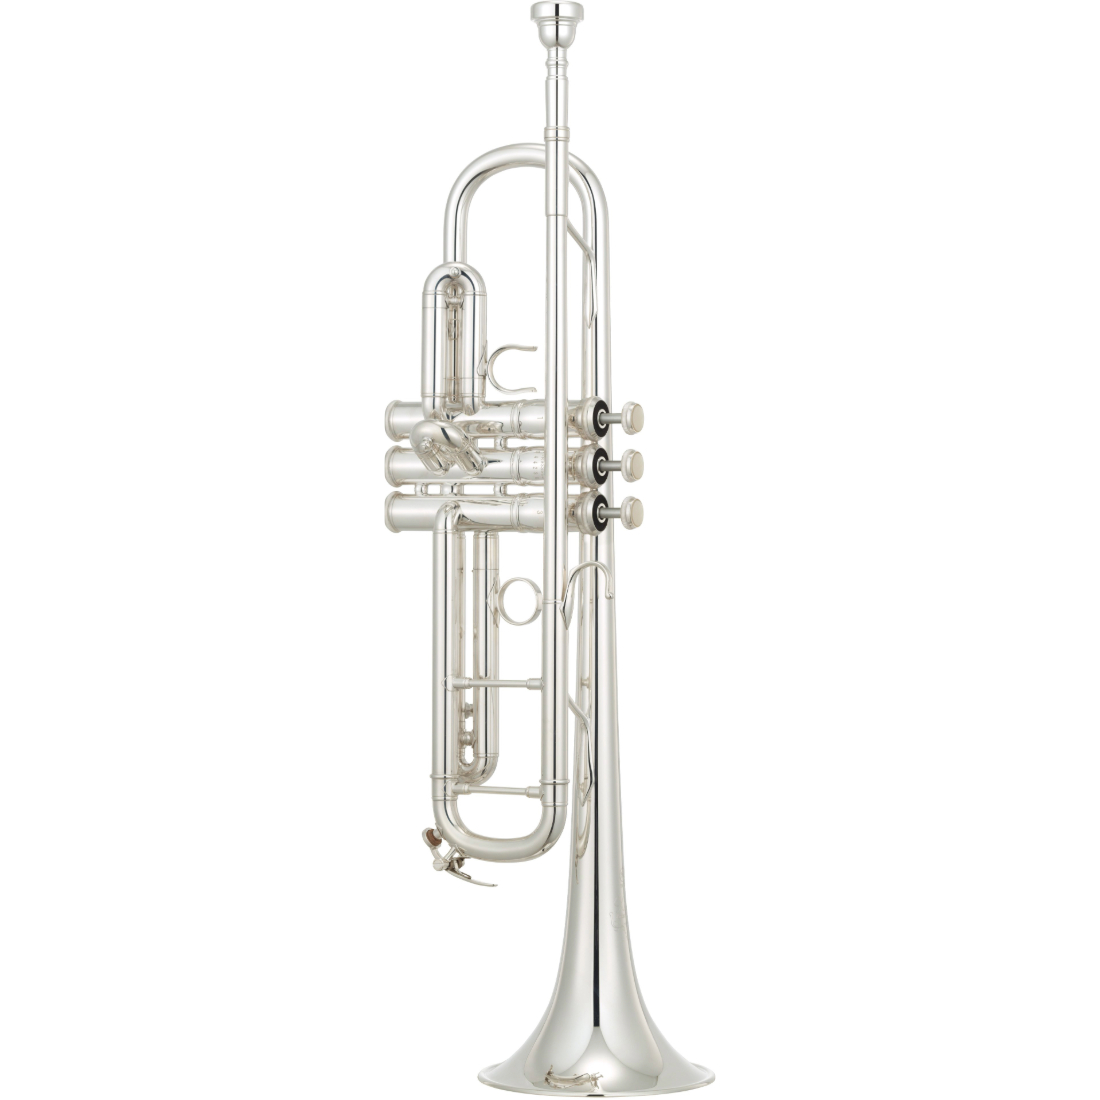 Silver Yamaha custom artist model trumpet